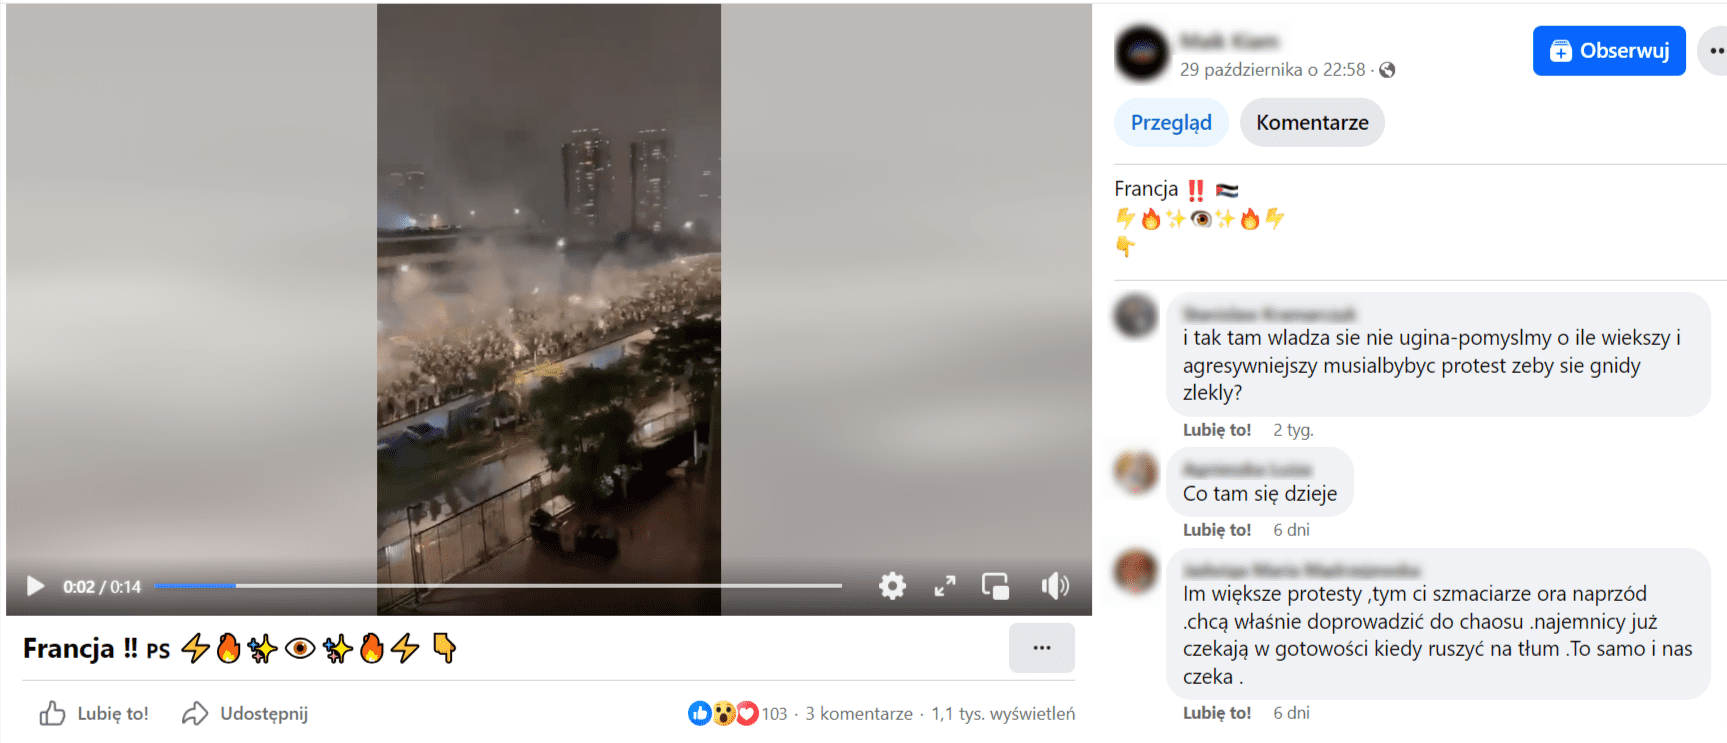 Zrzut ekranu z nagrania opublikowanego na Facebooku. Widoczny tłum ludzi idących przez miasto, nad którymi unosi się dym z materiałów pirotechnicznych. Liczba reakcji: 103, liczba komentarzy: 3, liczba wyświetleń: 1,1 tys.